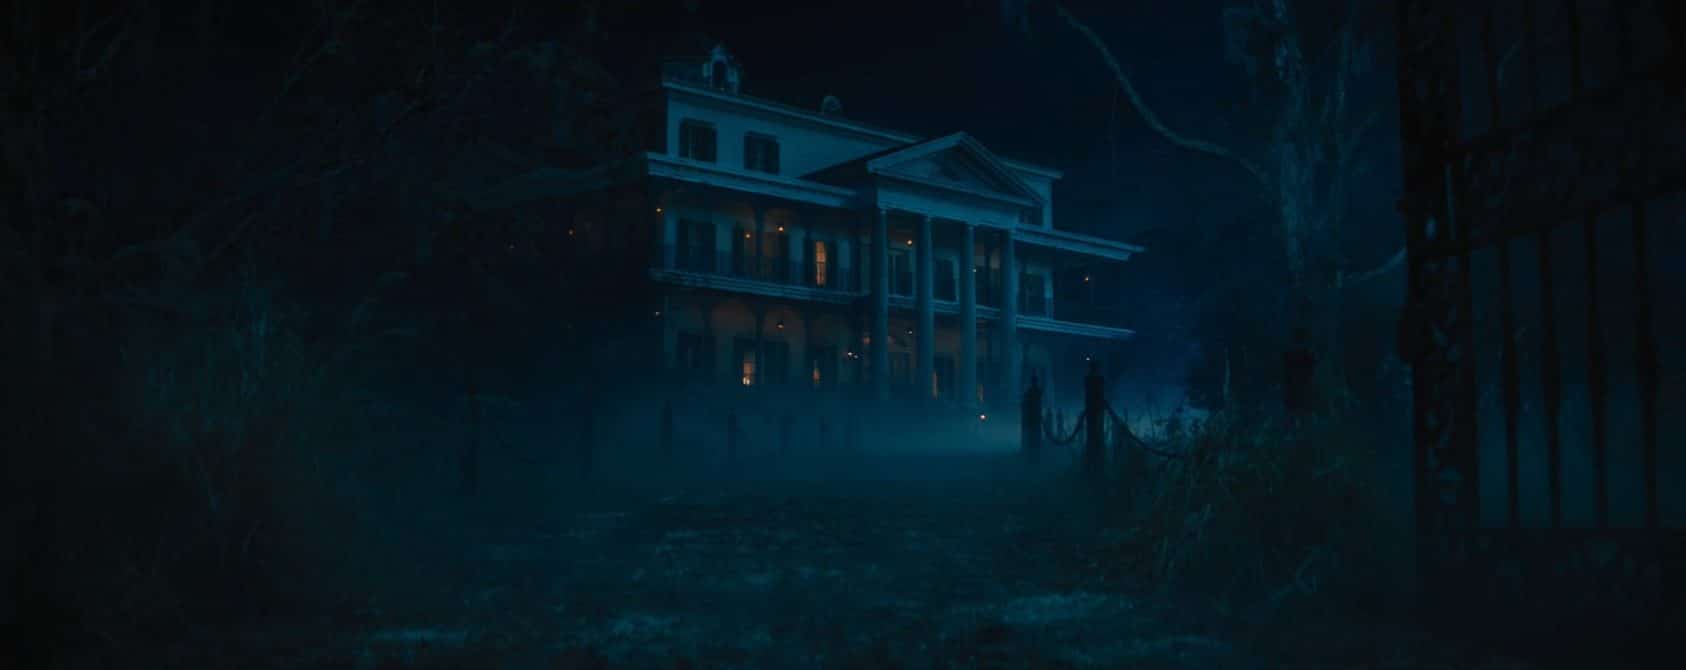 'Haunted Mansion'